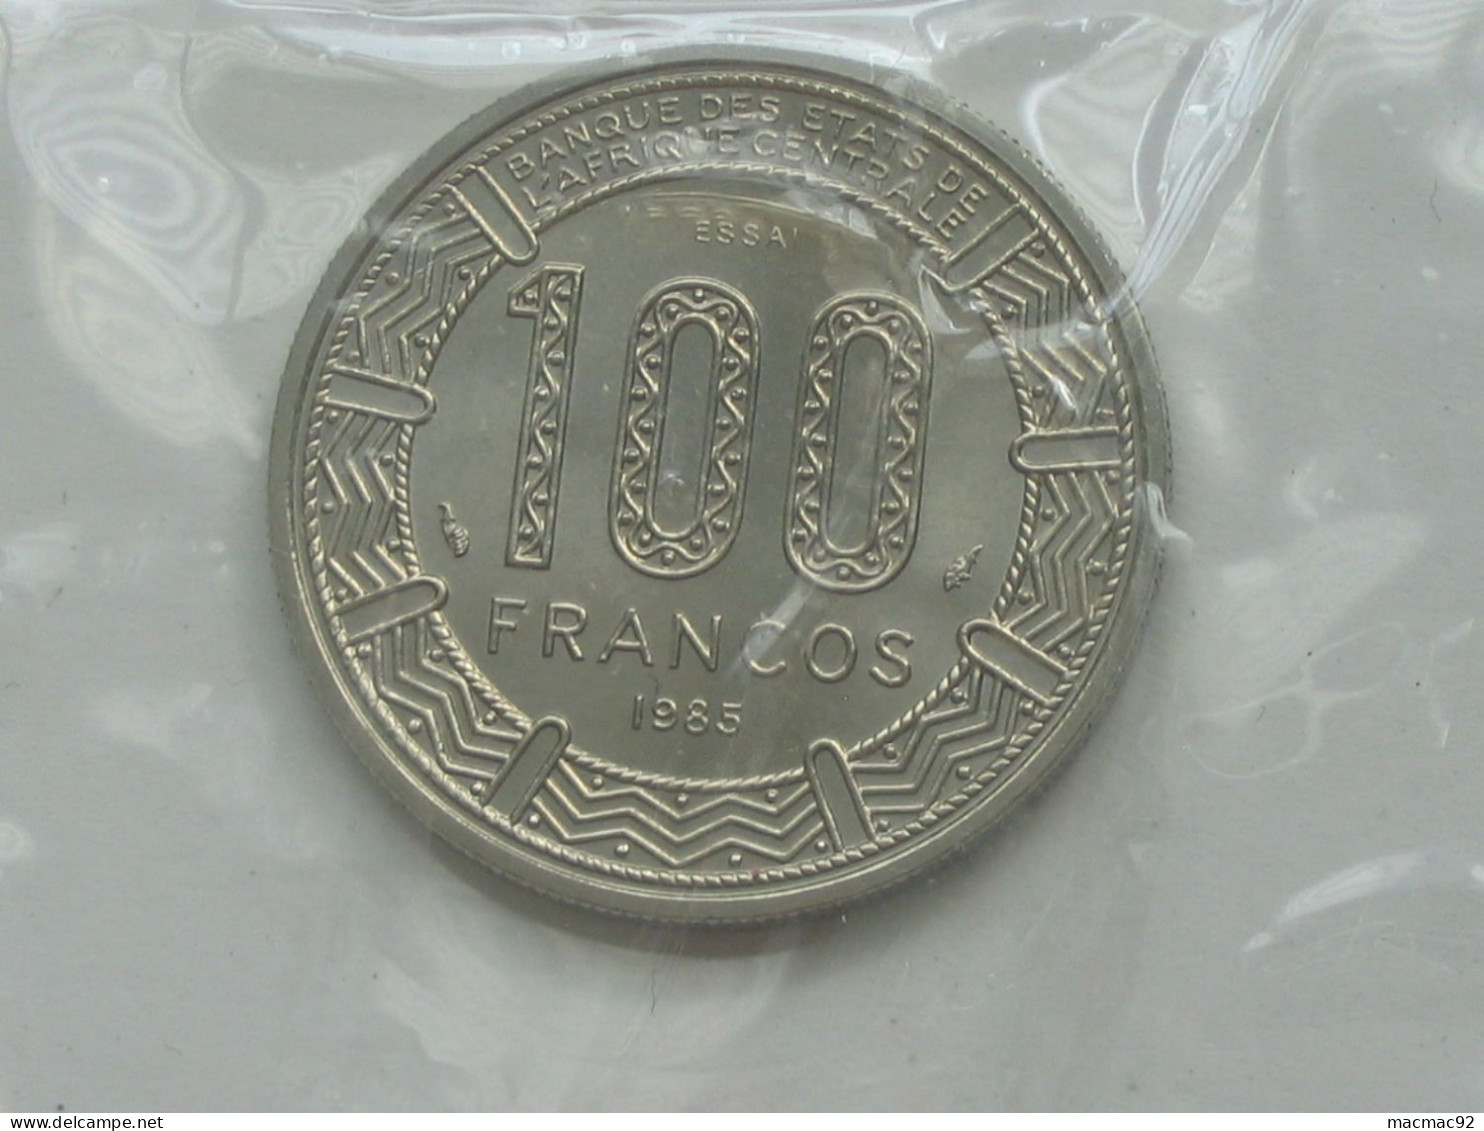 GUINEE EQUATORIALE - Rare ESSAI De 100 Francs 1985 - Banque Des états De L'Afrique Centrale  **** EN ACHAT IMMEDIAT **** - Guinée Equatoriale